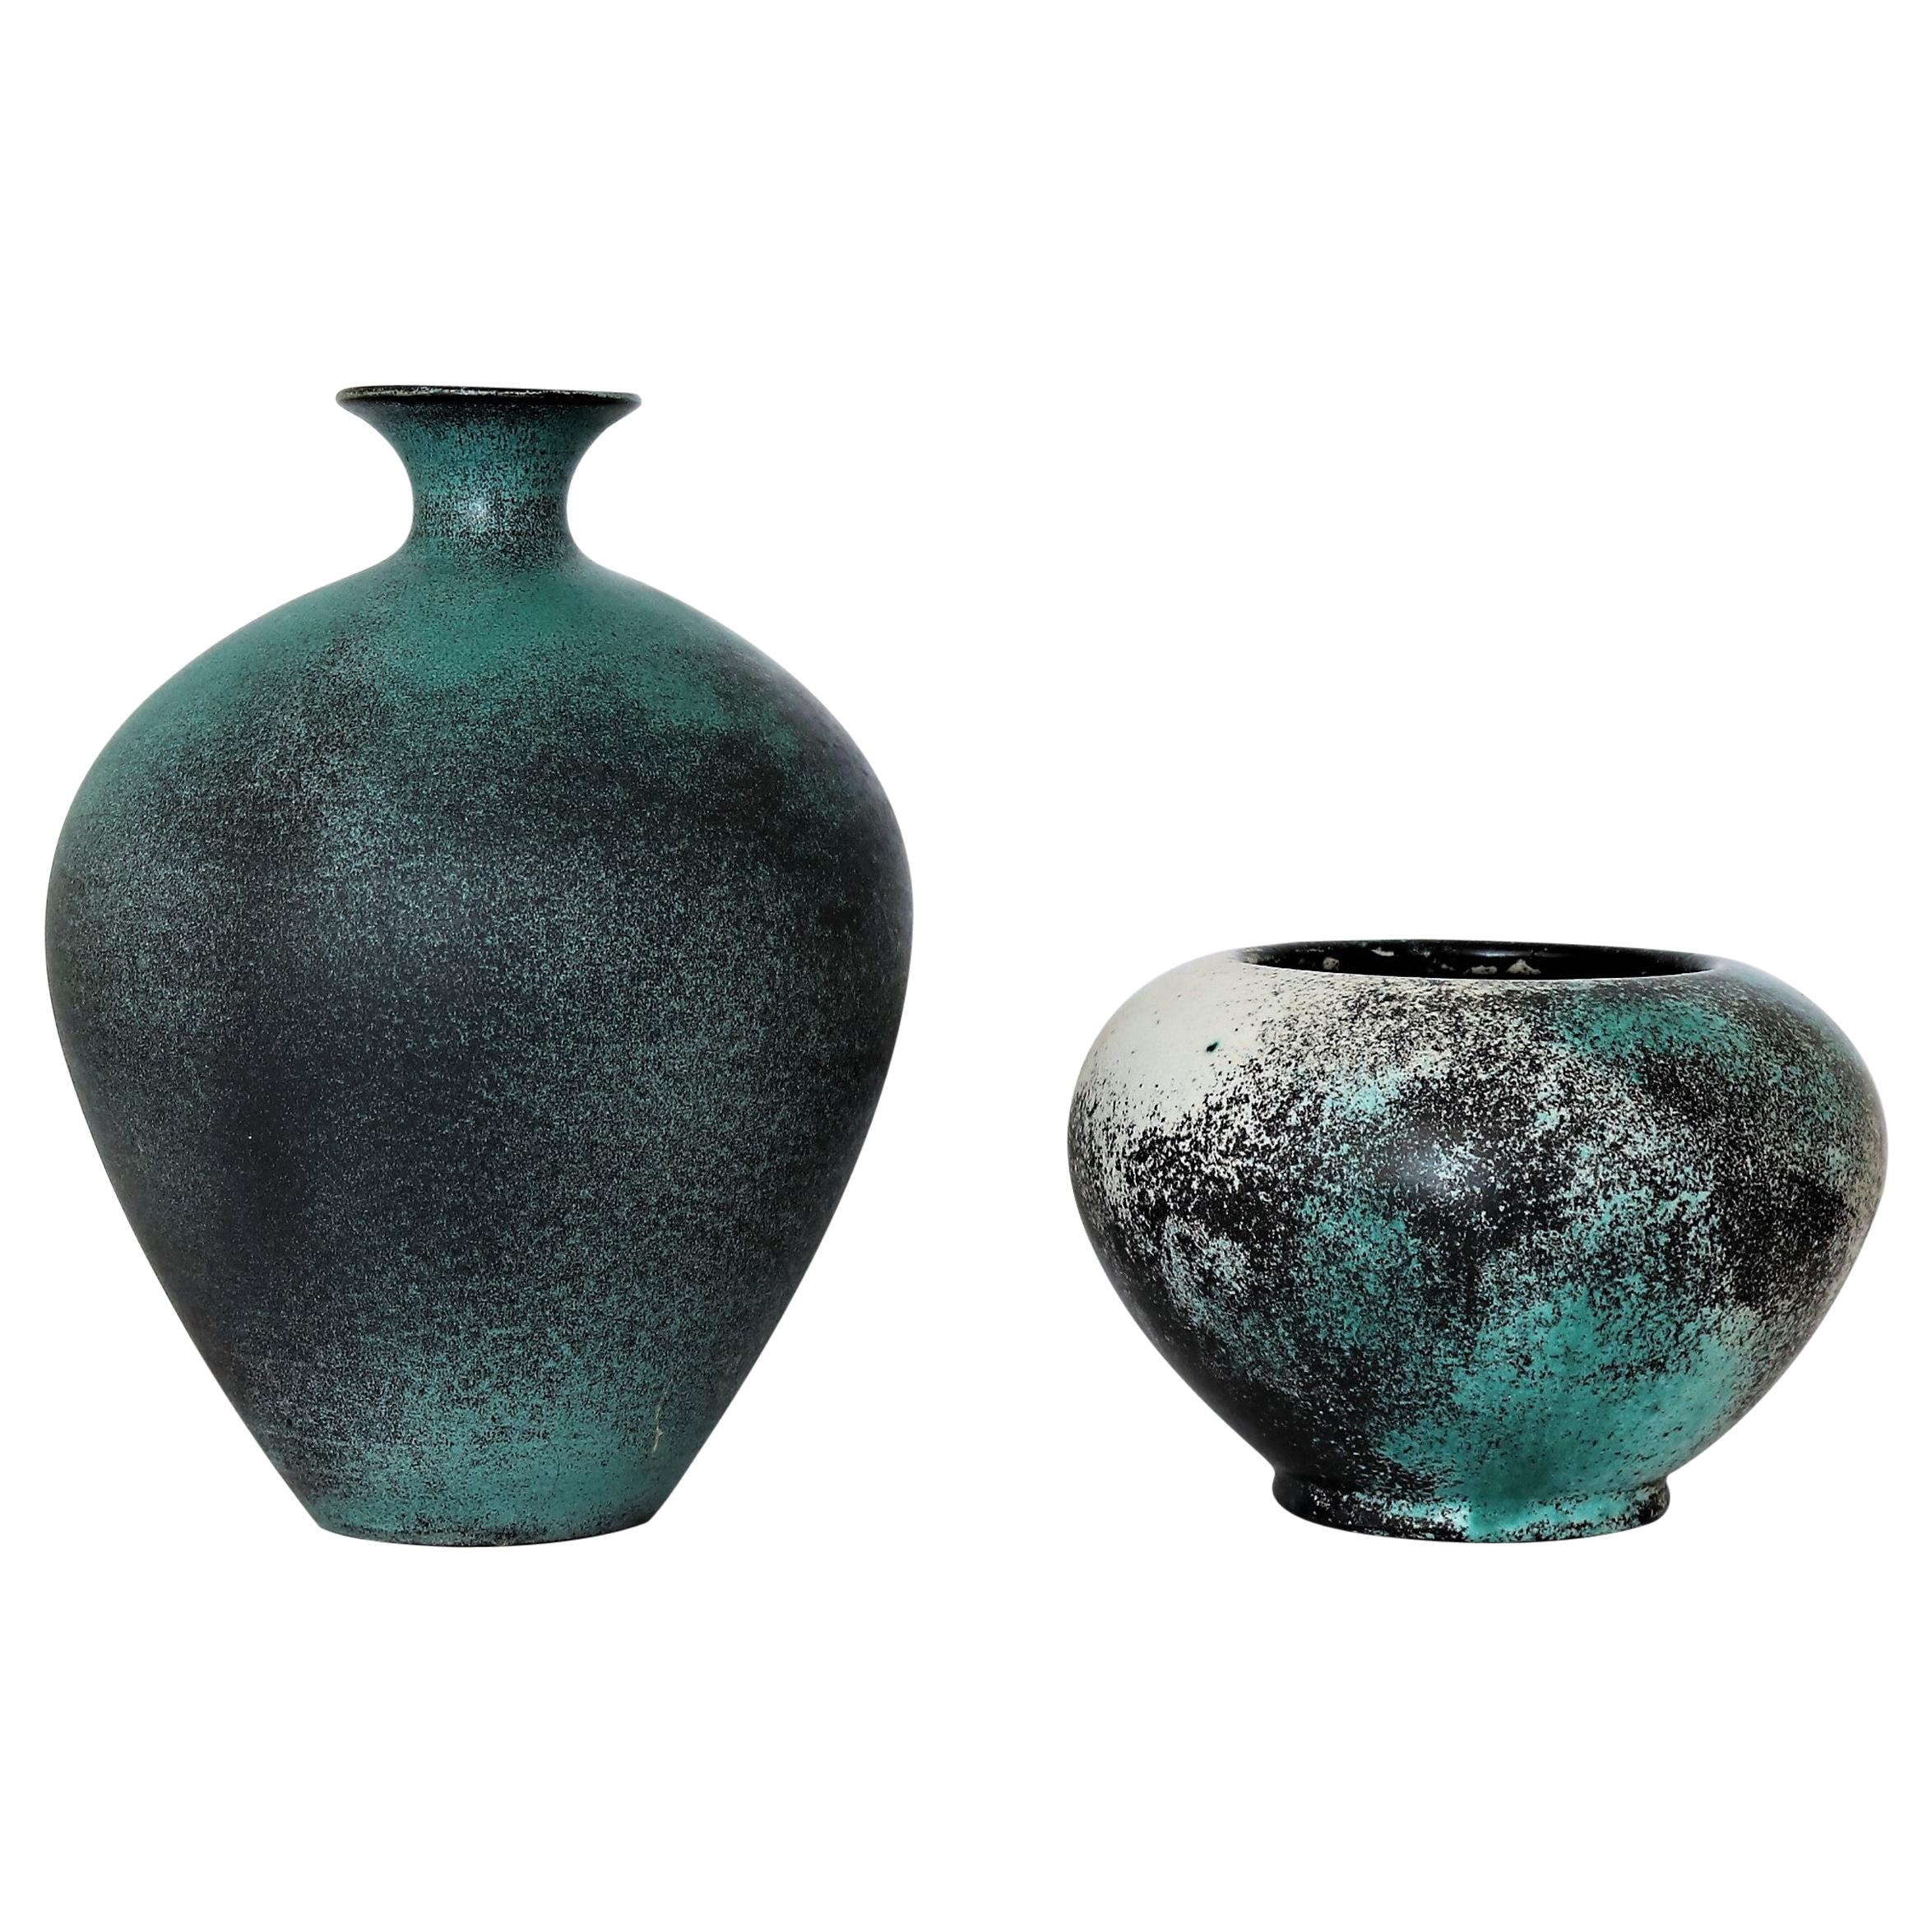 Svend Hammershoj Earthenware Vases for Kähler Ceramics, Denmark, 1930s